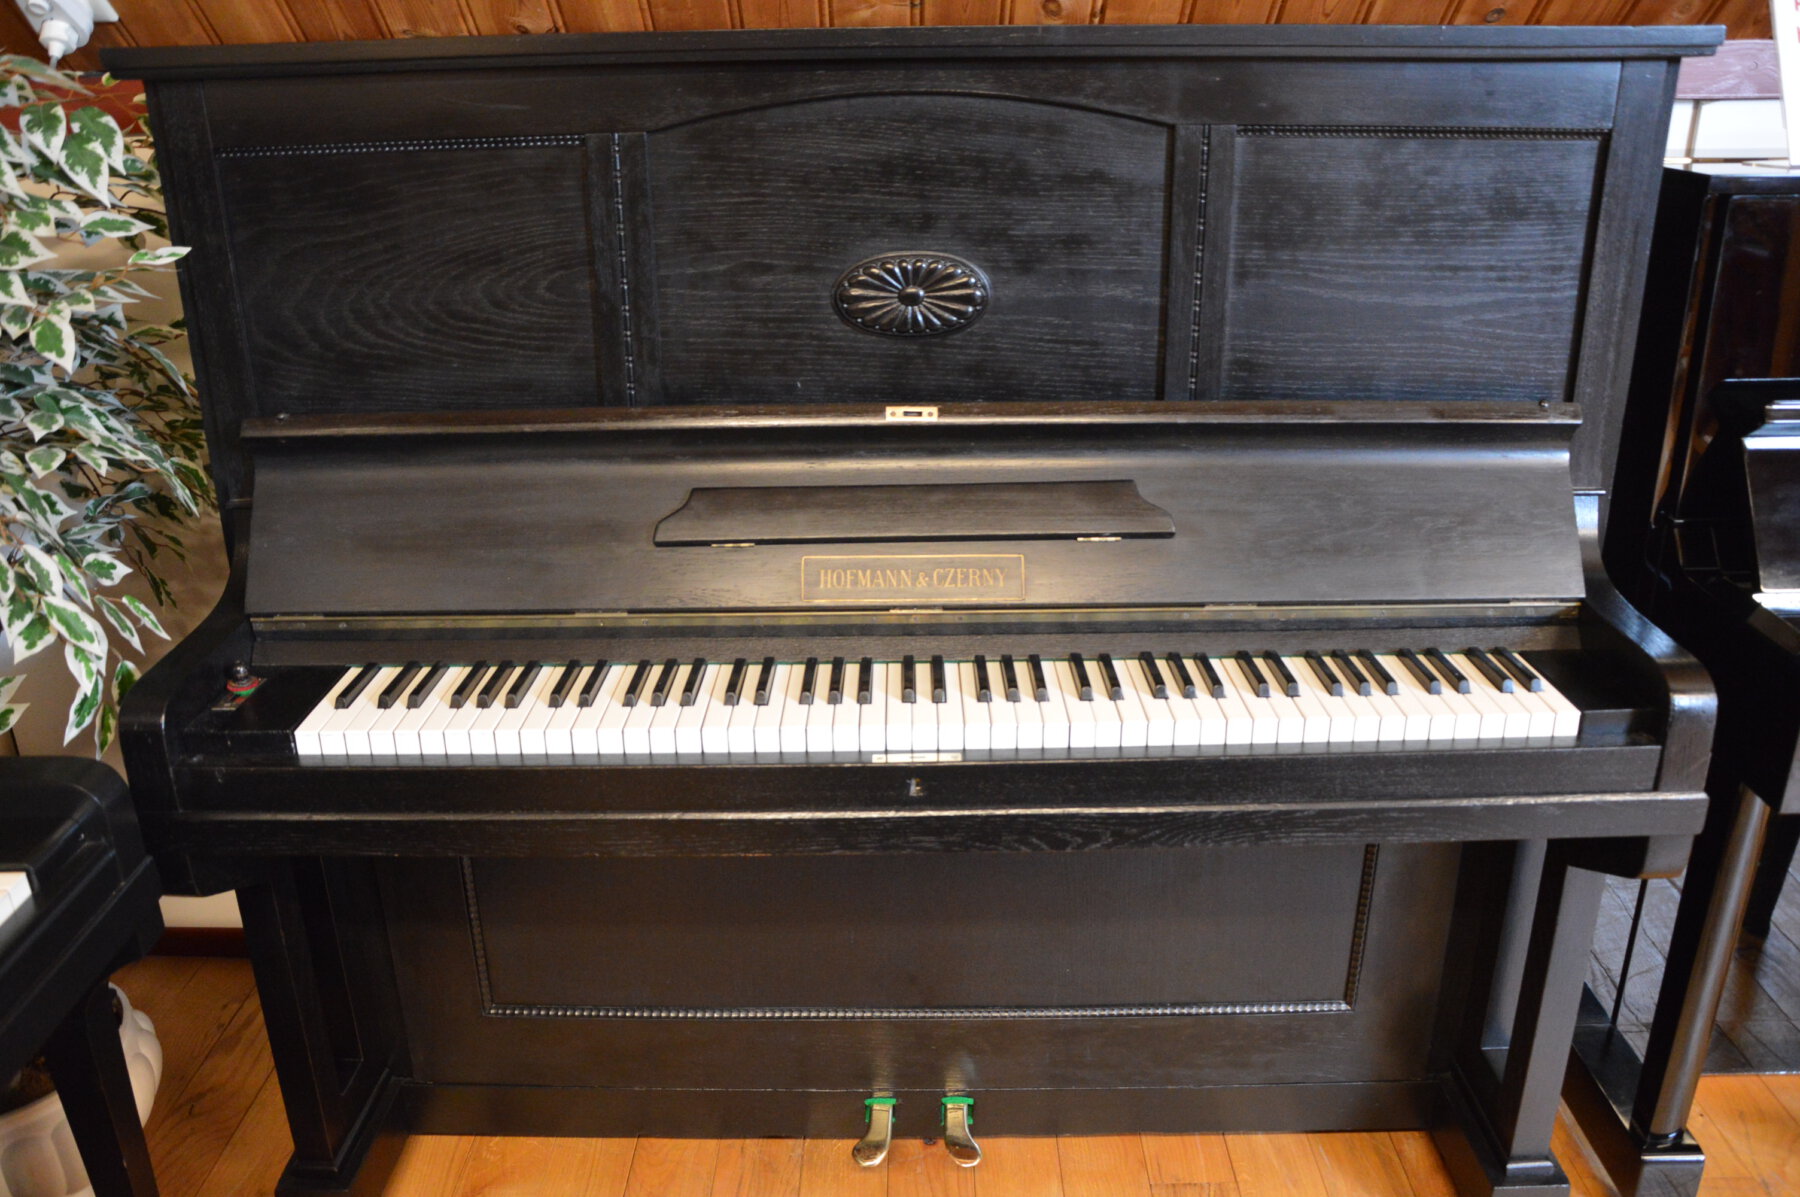 Hoffmann & Czerny piano